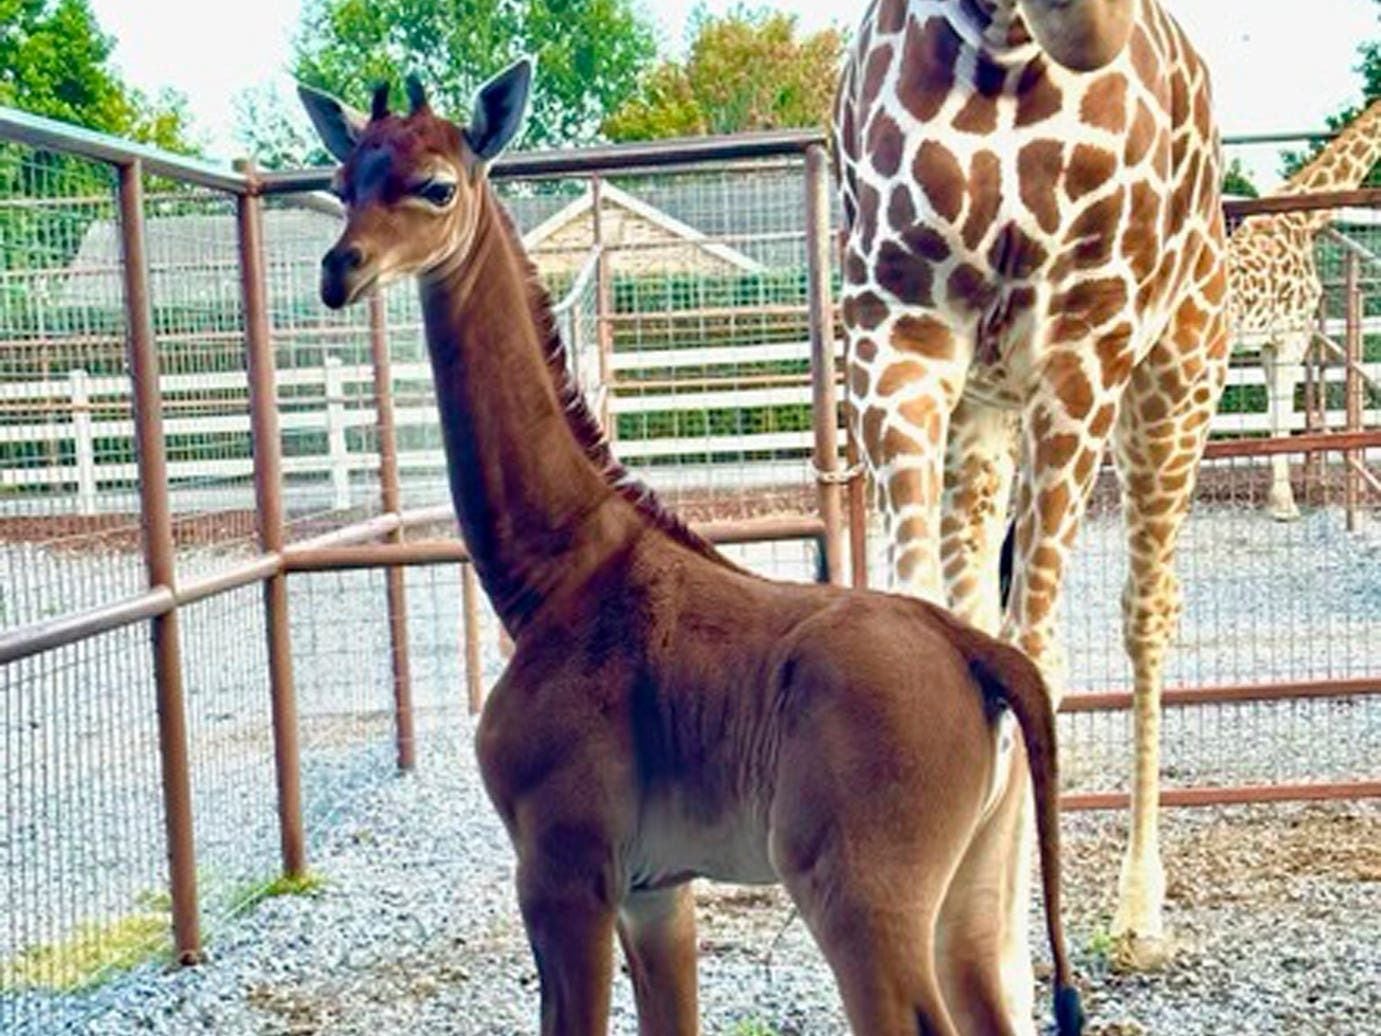 Rare spotless giraffe with no coat pattern born at US zoo